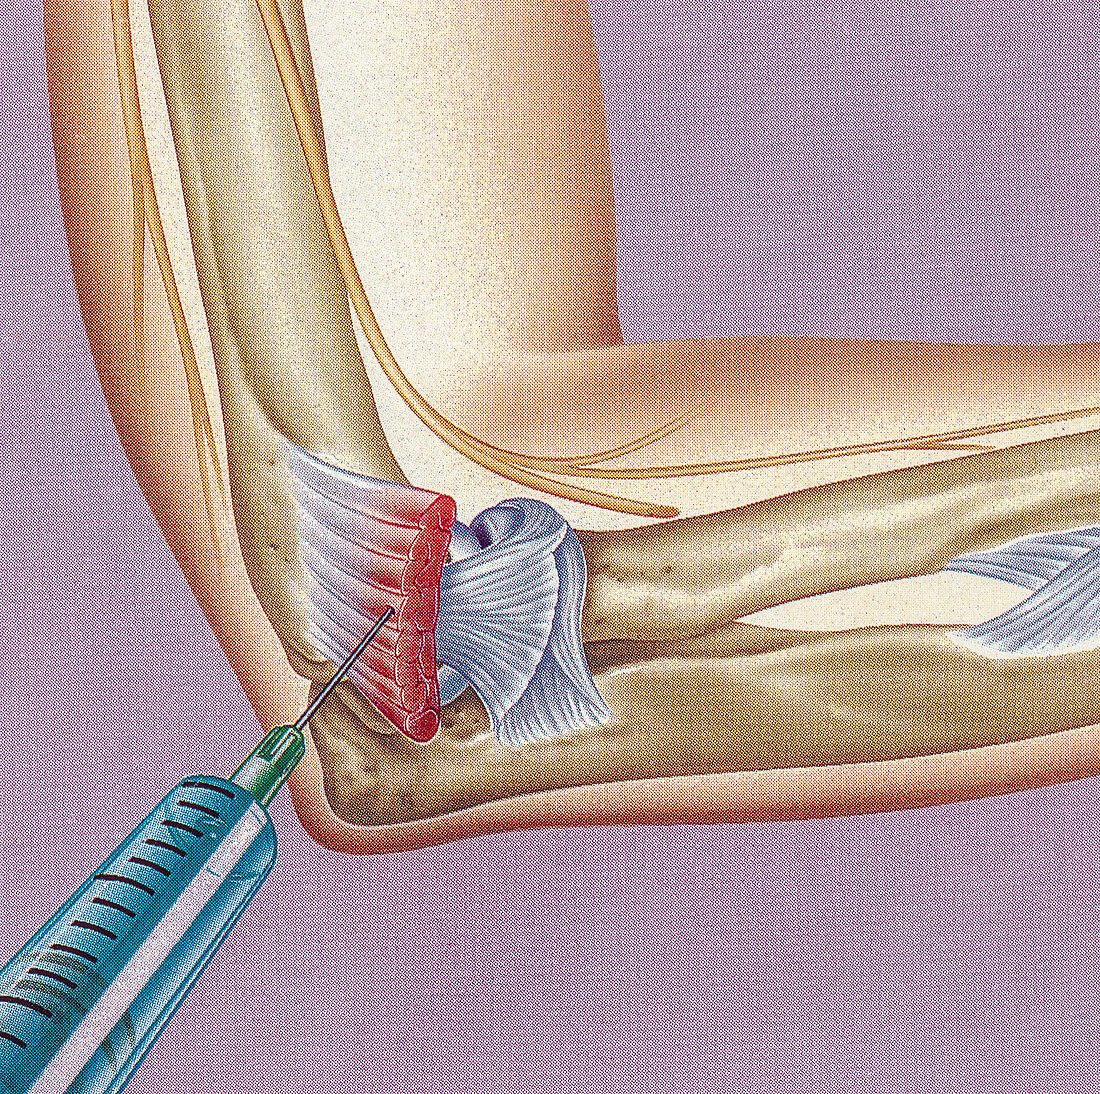 Steroid treatment of teniis elbow, illustration